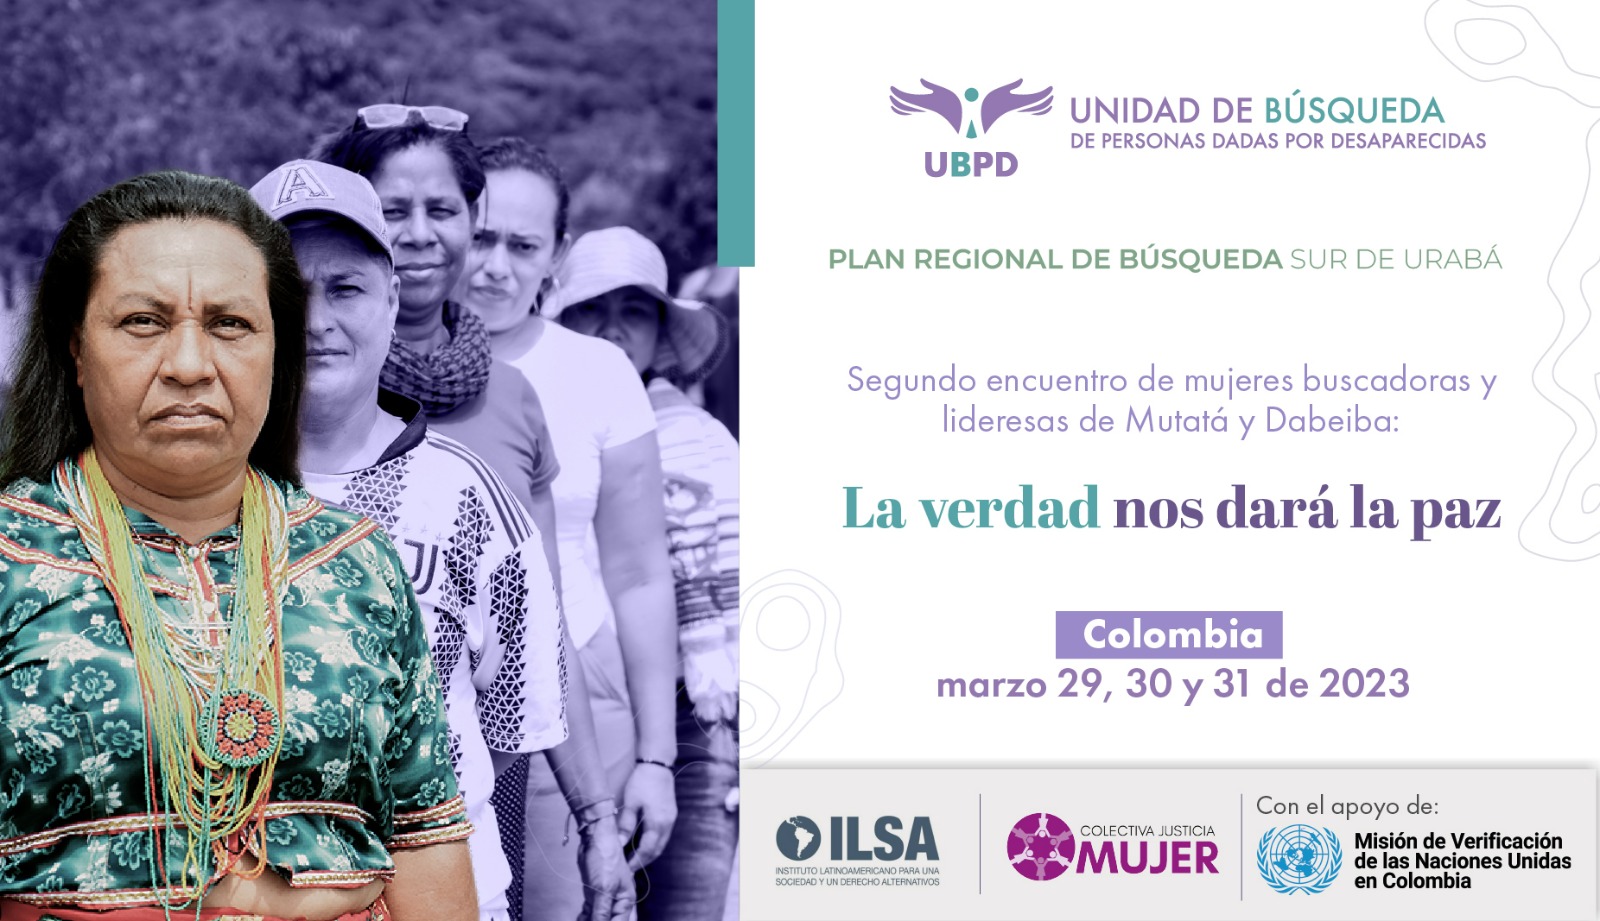 Unidad de búsqueda de personas desaparecidas, Misión de Verificación de las naciones unidas en Colombia, Colectiva Justicia Mujer, ILSA